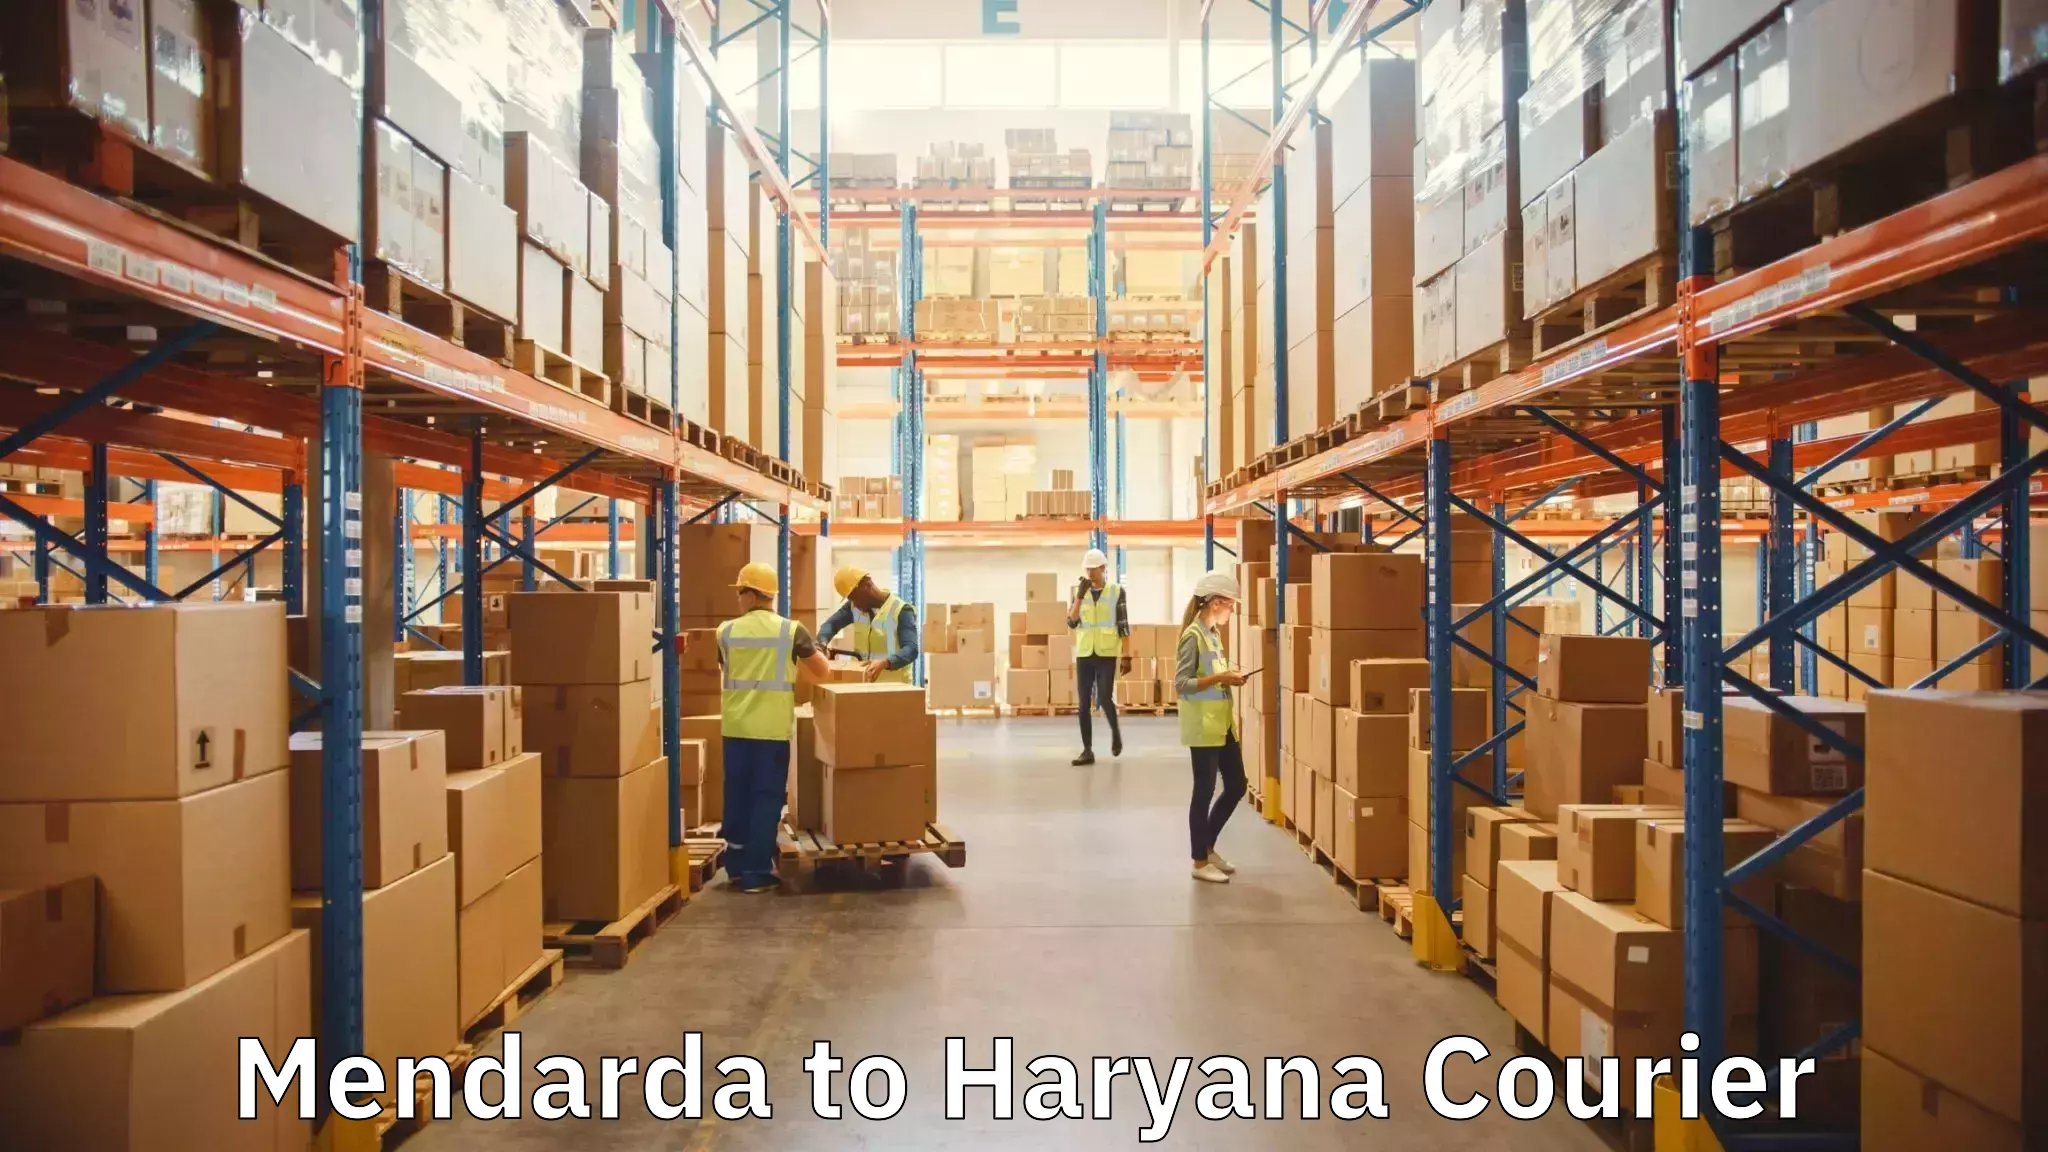 Furniture delivery service Mendarda to IIIT Sonepat